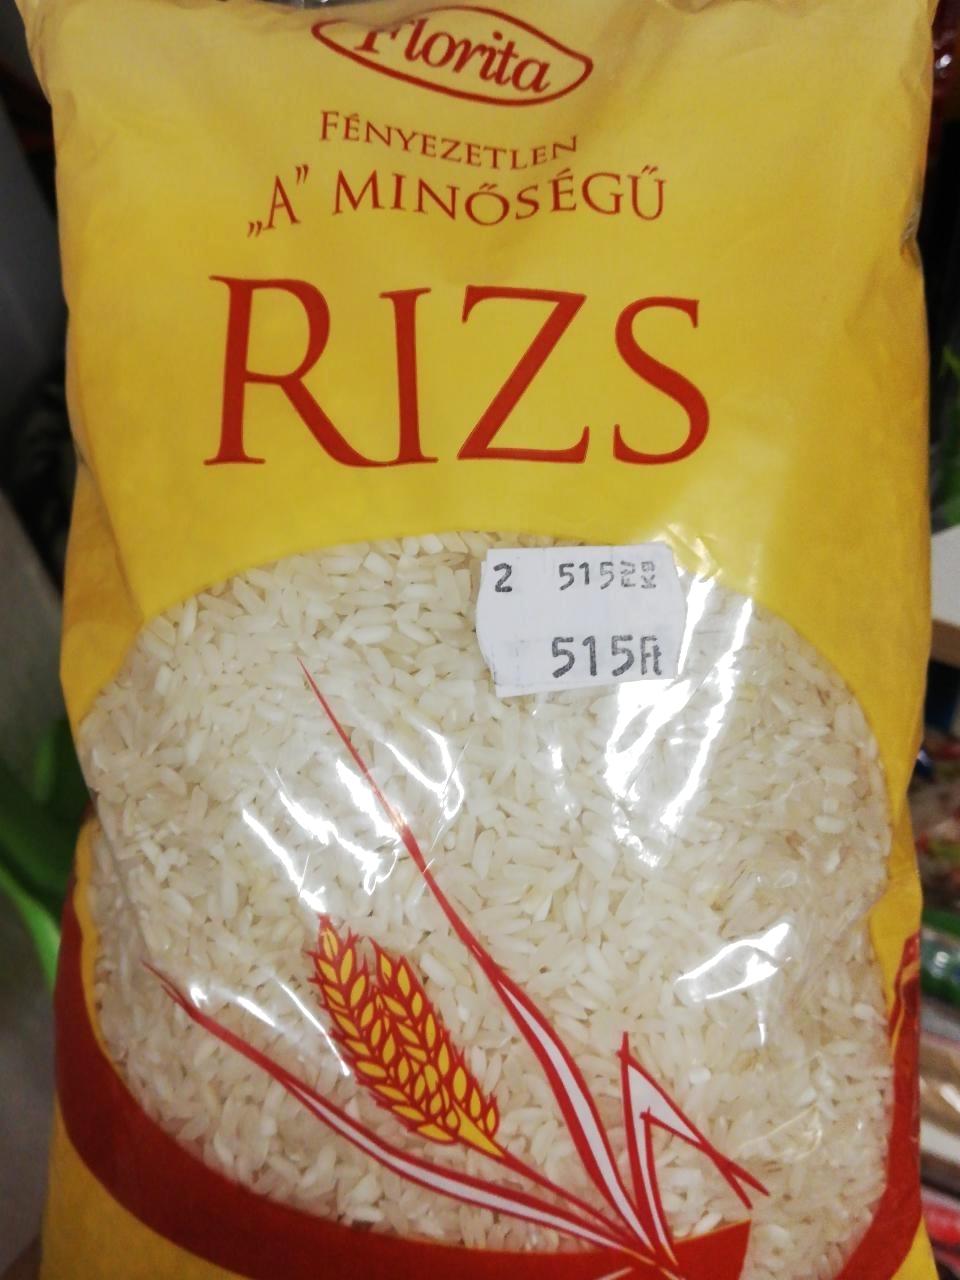 Képek - Fényezetlen A minőségű rizs Florita